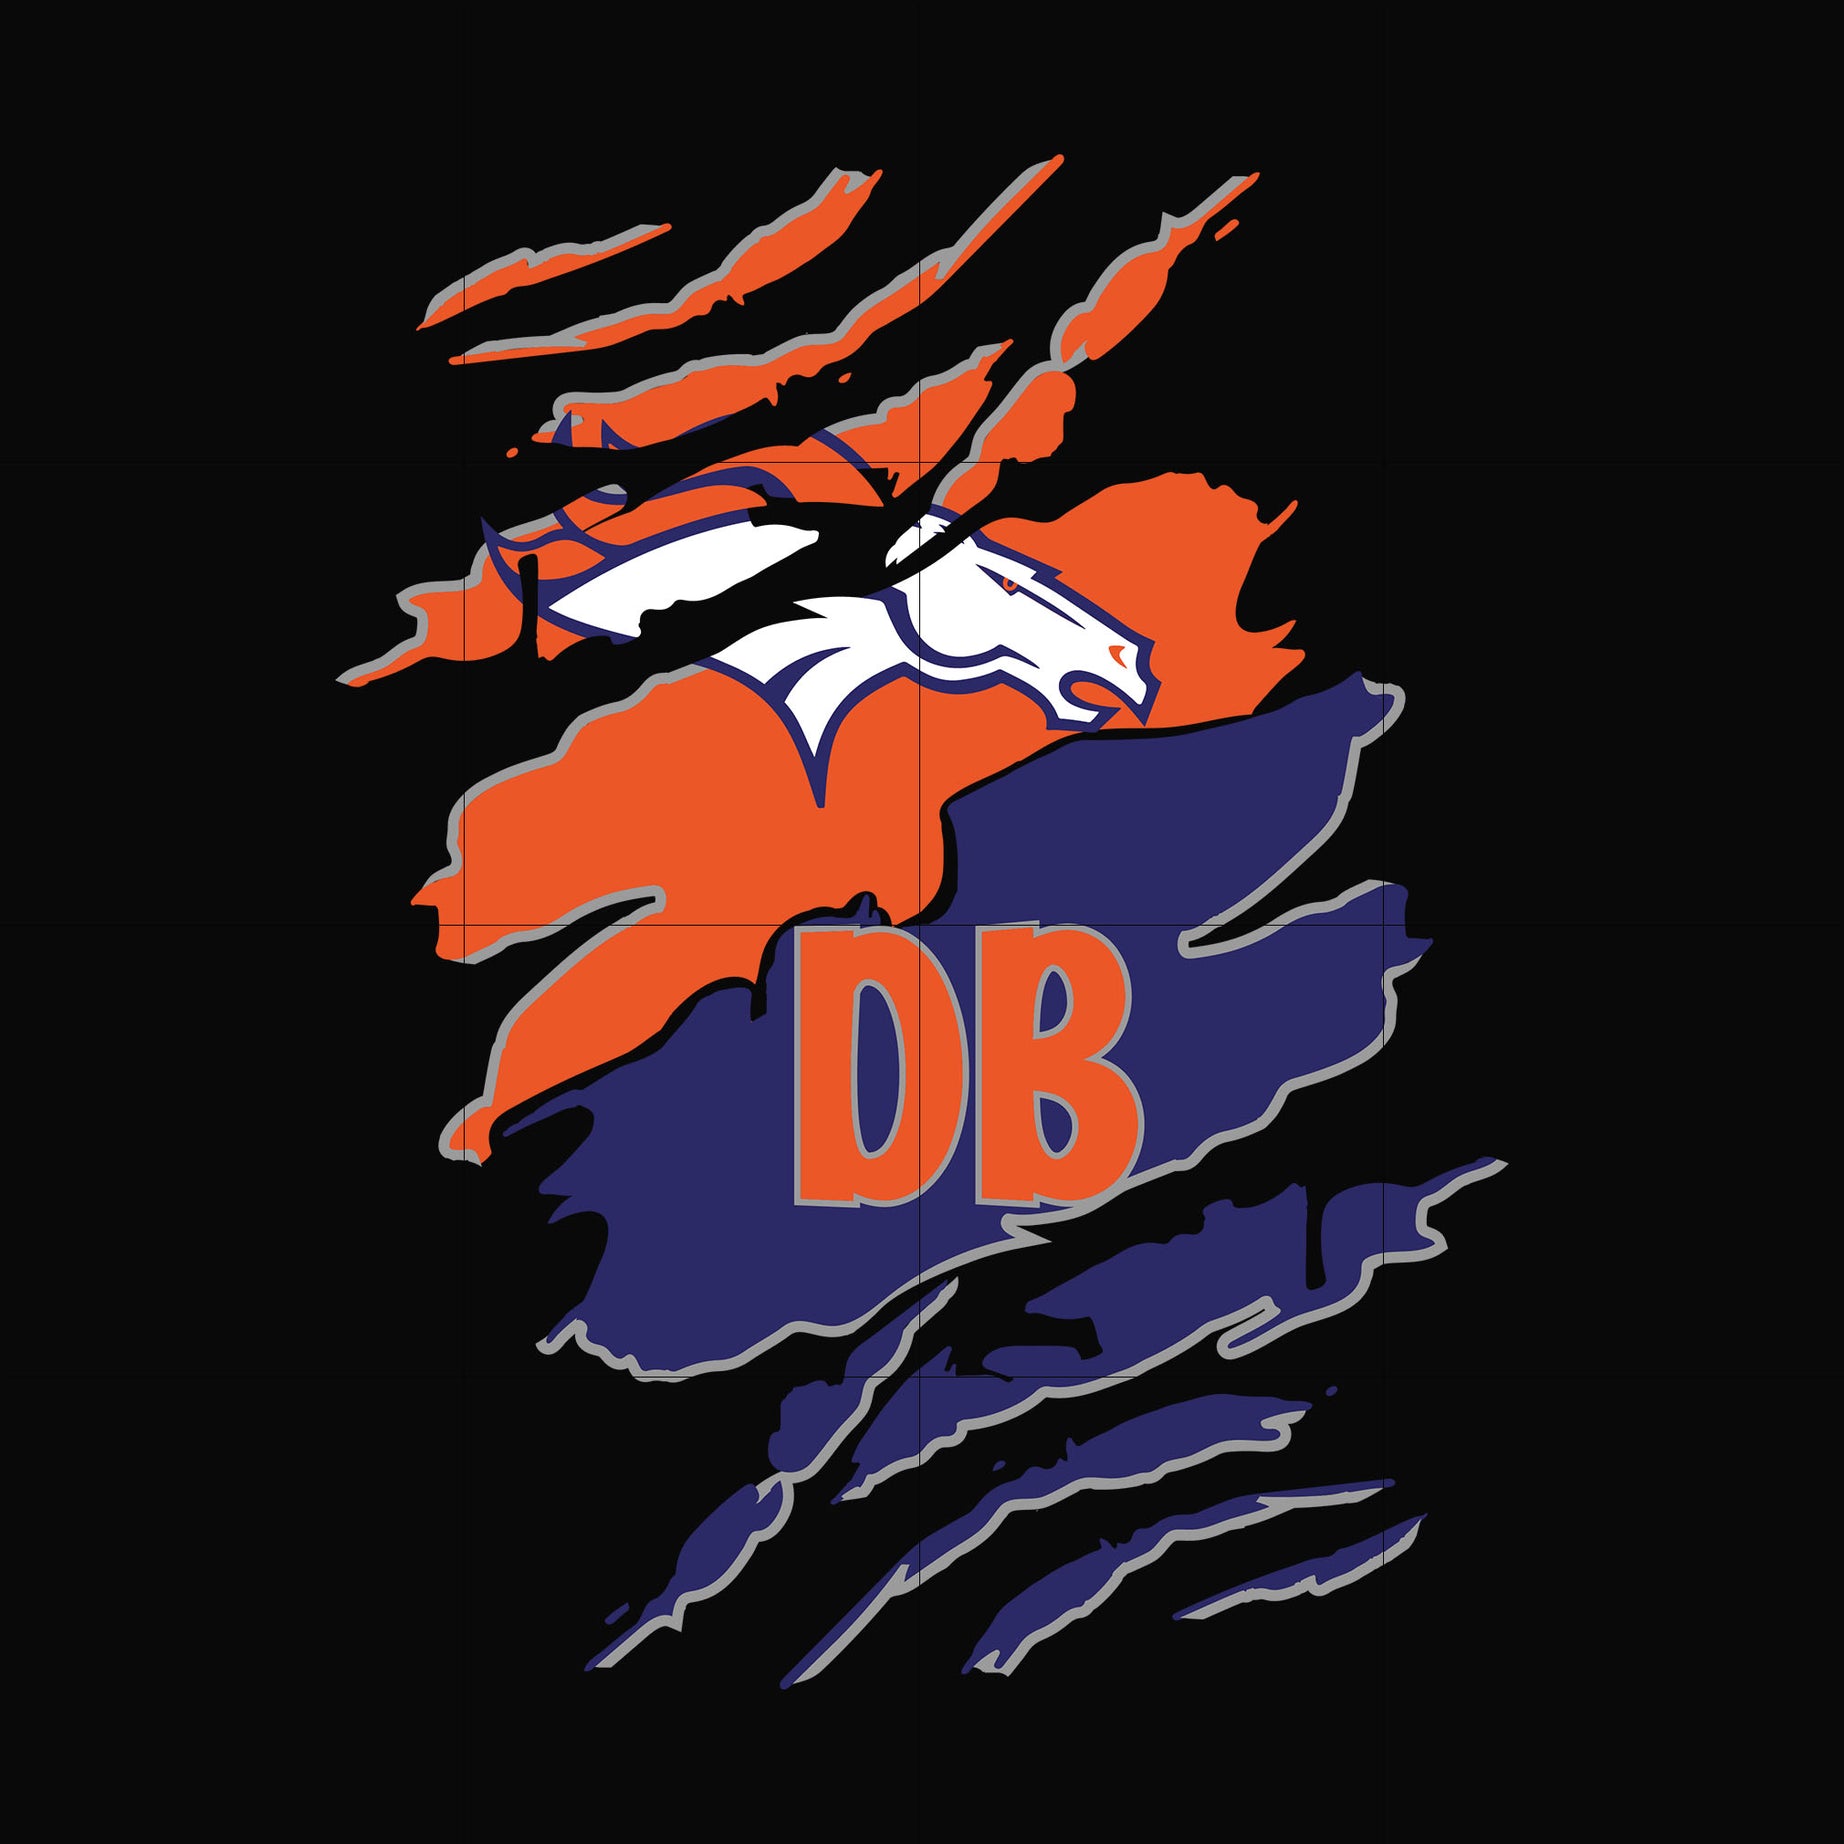 Denver Broncos Cleveland Browns svg, png, dxf, eps digital file HLW0258